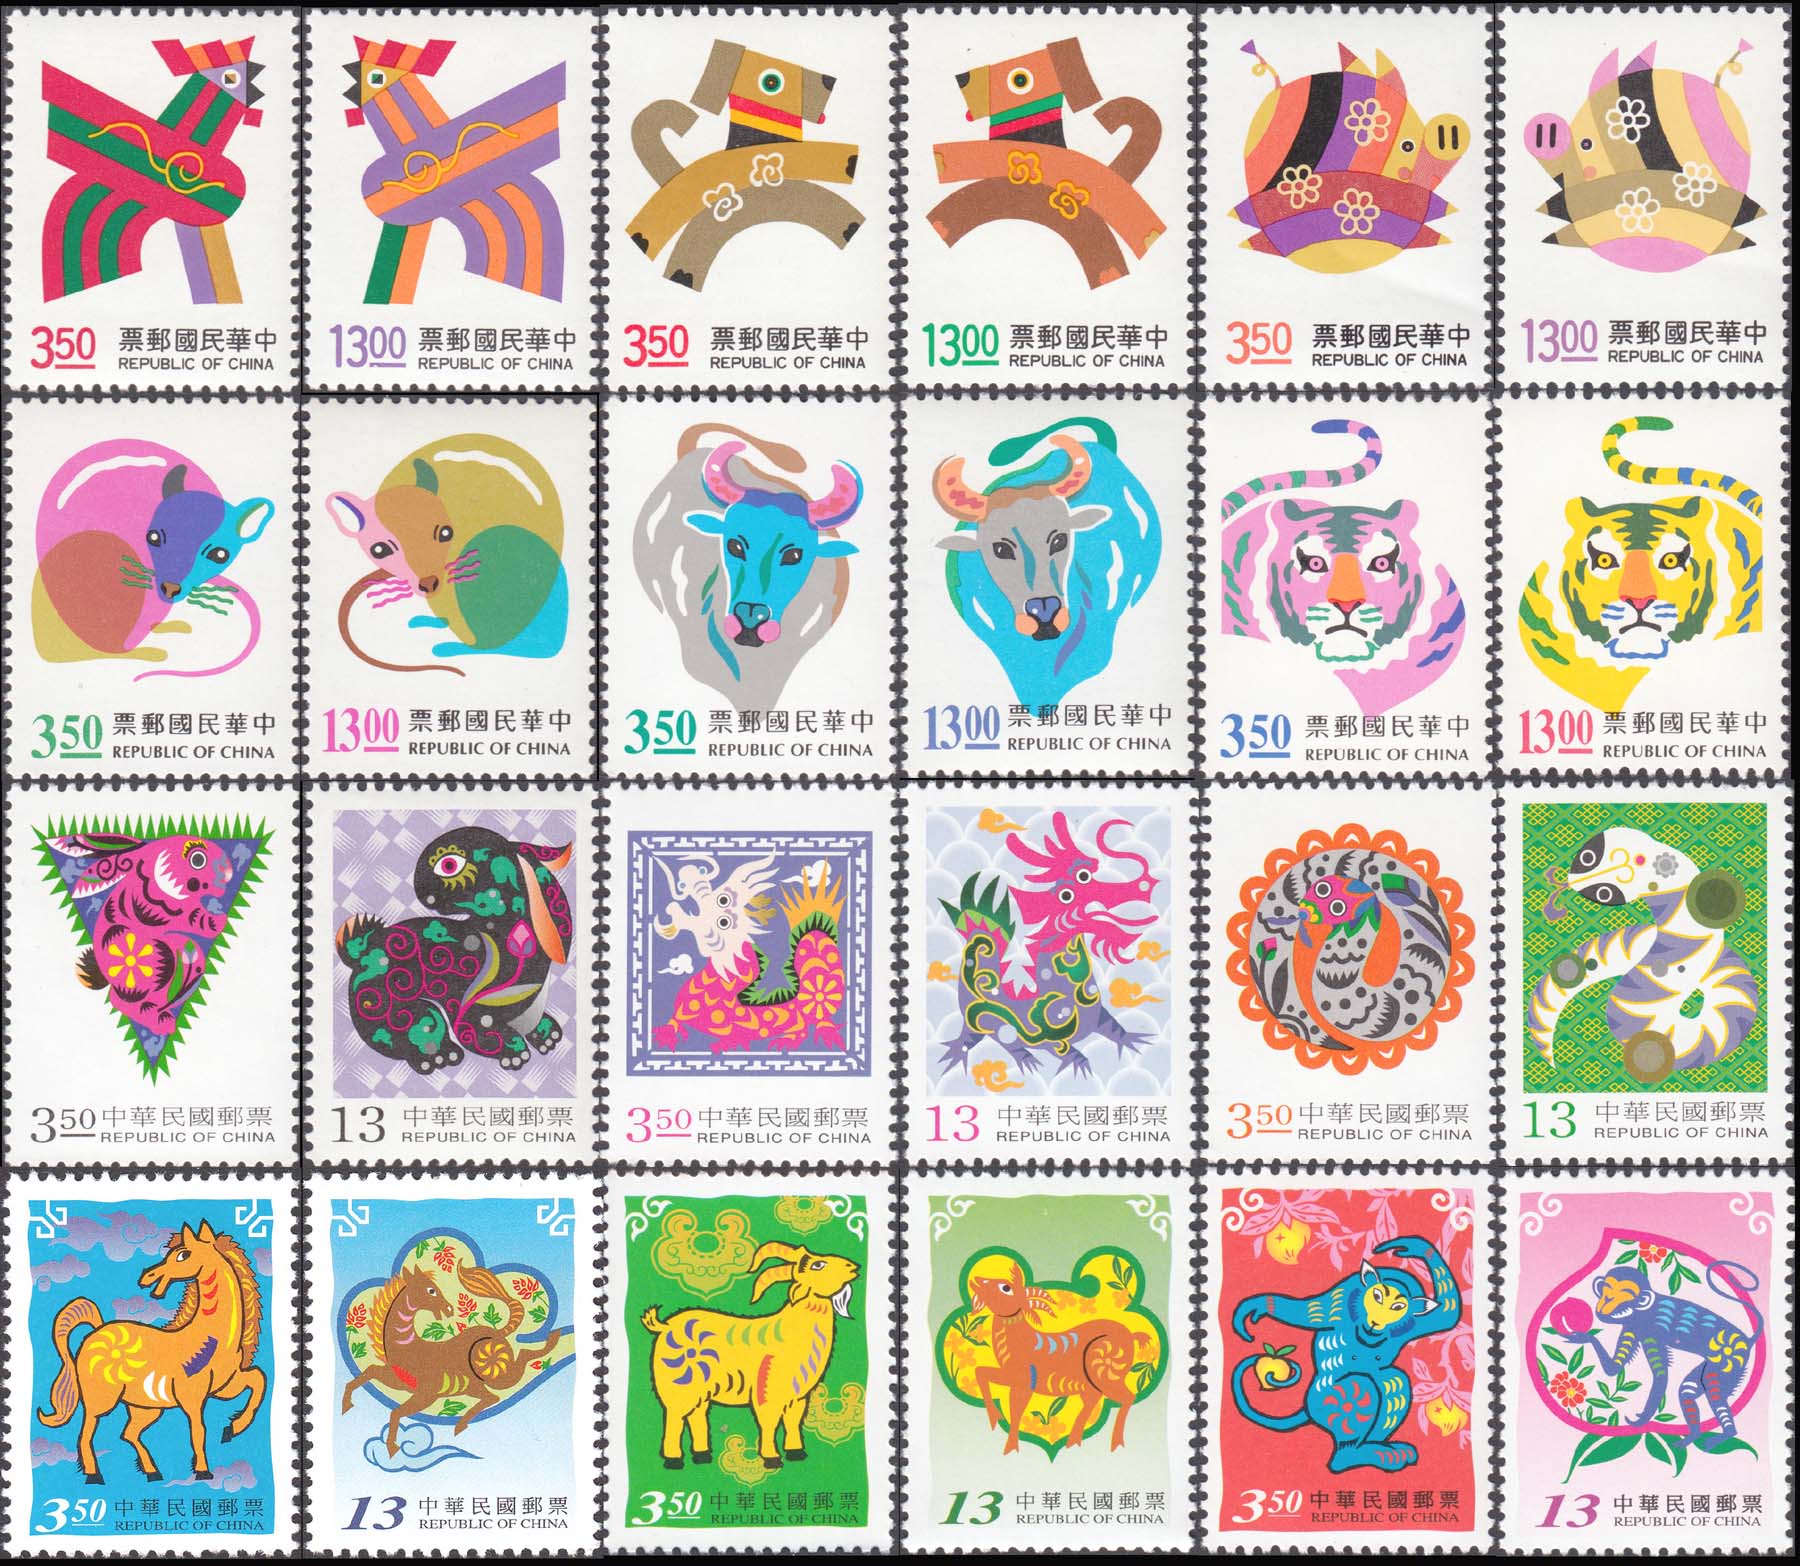 邮票大全(1到10万元的邮票图片)